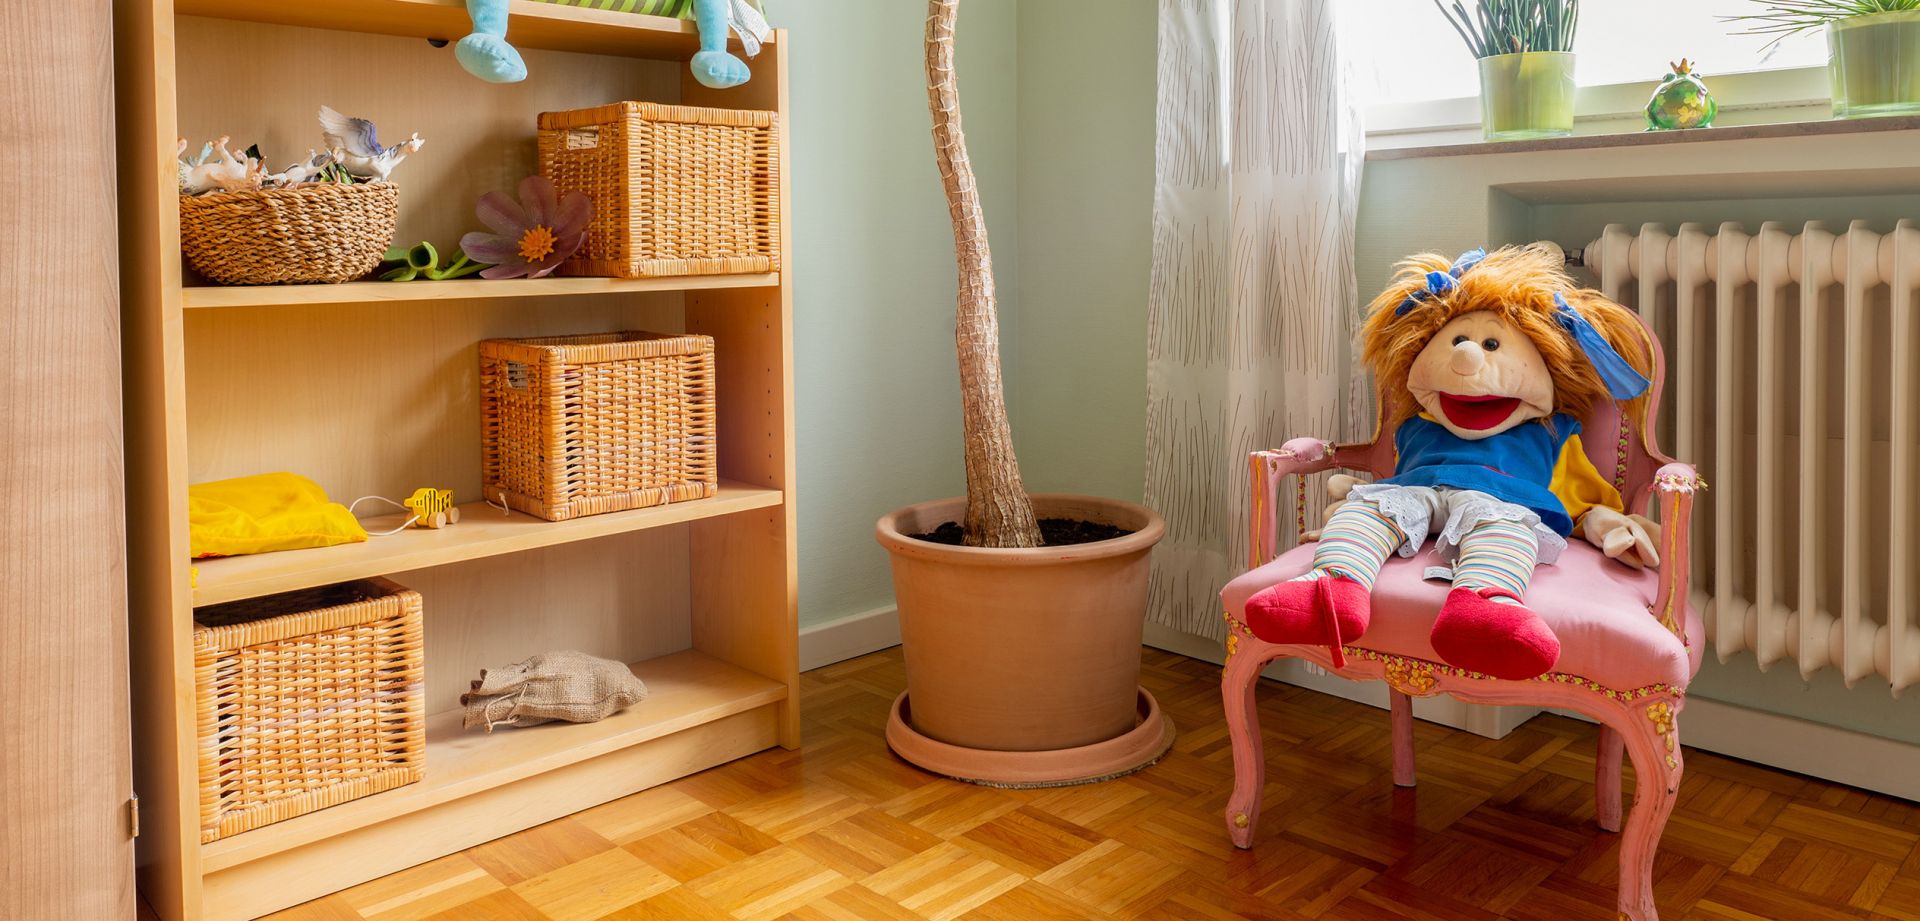 Foto einer Stoffpuppe auf einem Stuhl sowie einem Regal mit verschiedenen Gegenständen und einem Pflanzentopf.